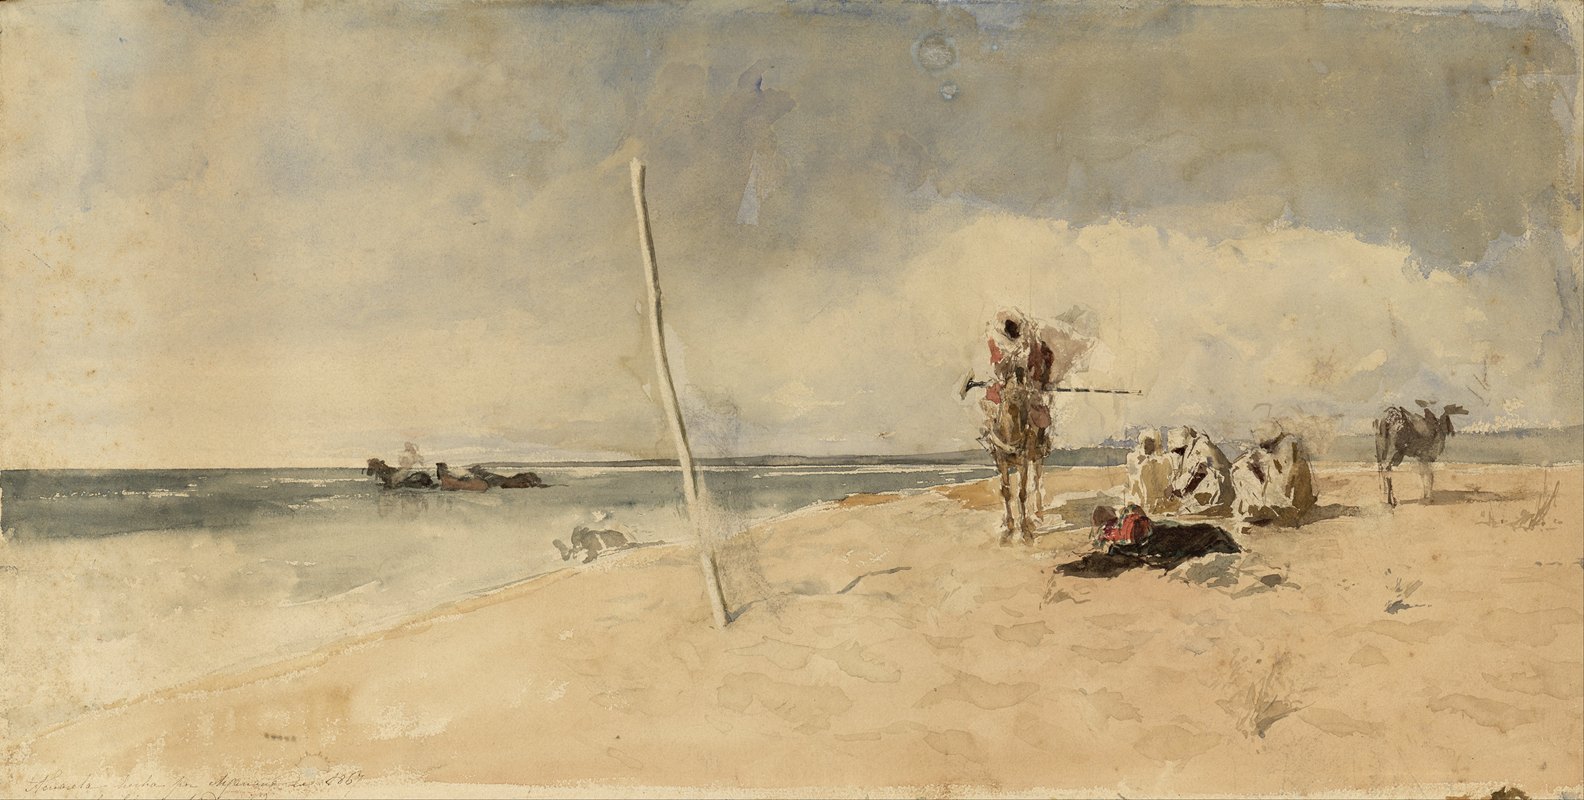 非洲海滩`African Beach (circa 1867) by Mariano Fortuny Marsal